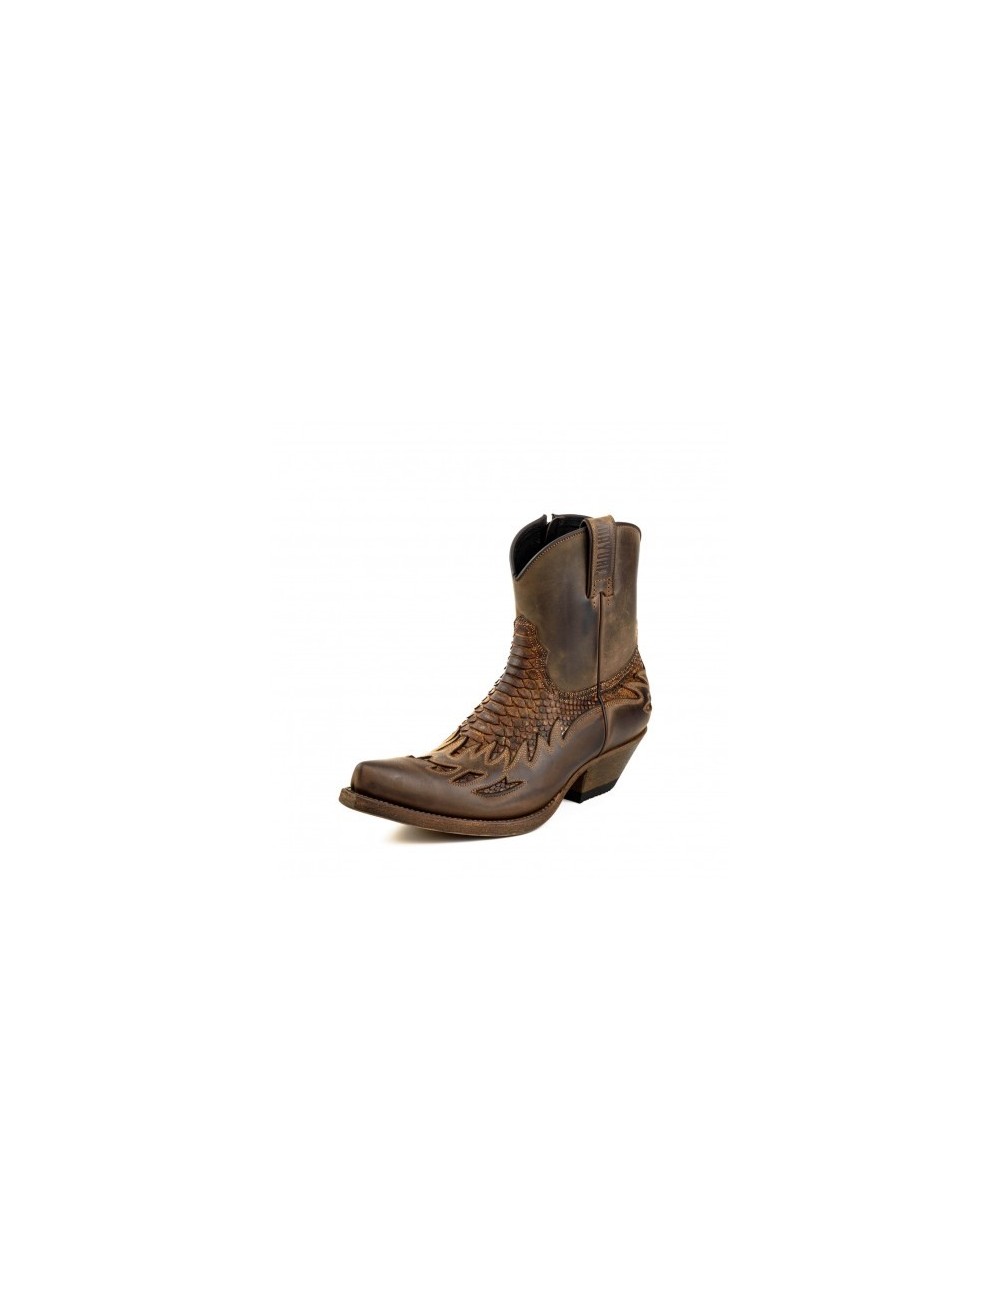 Boots santiags cuir et serpent naturel - Bottines cowboy artisanales